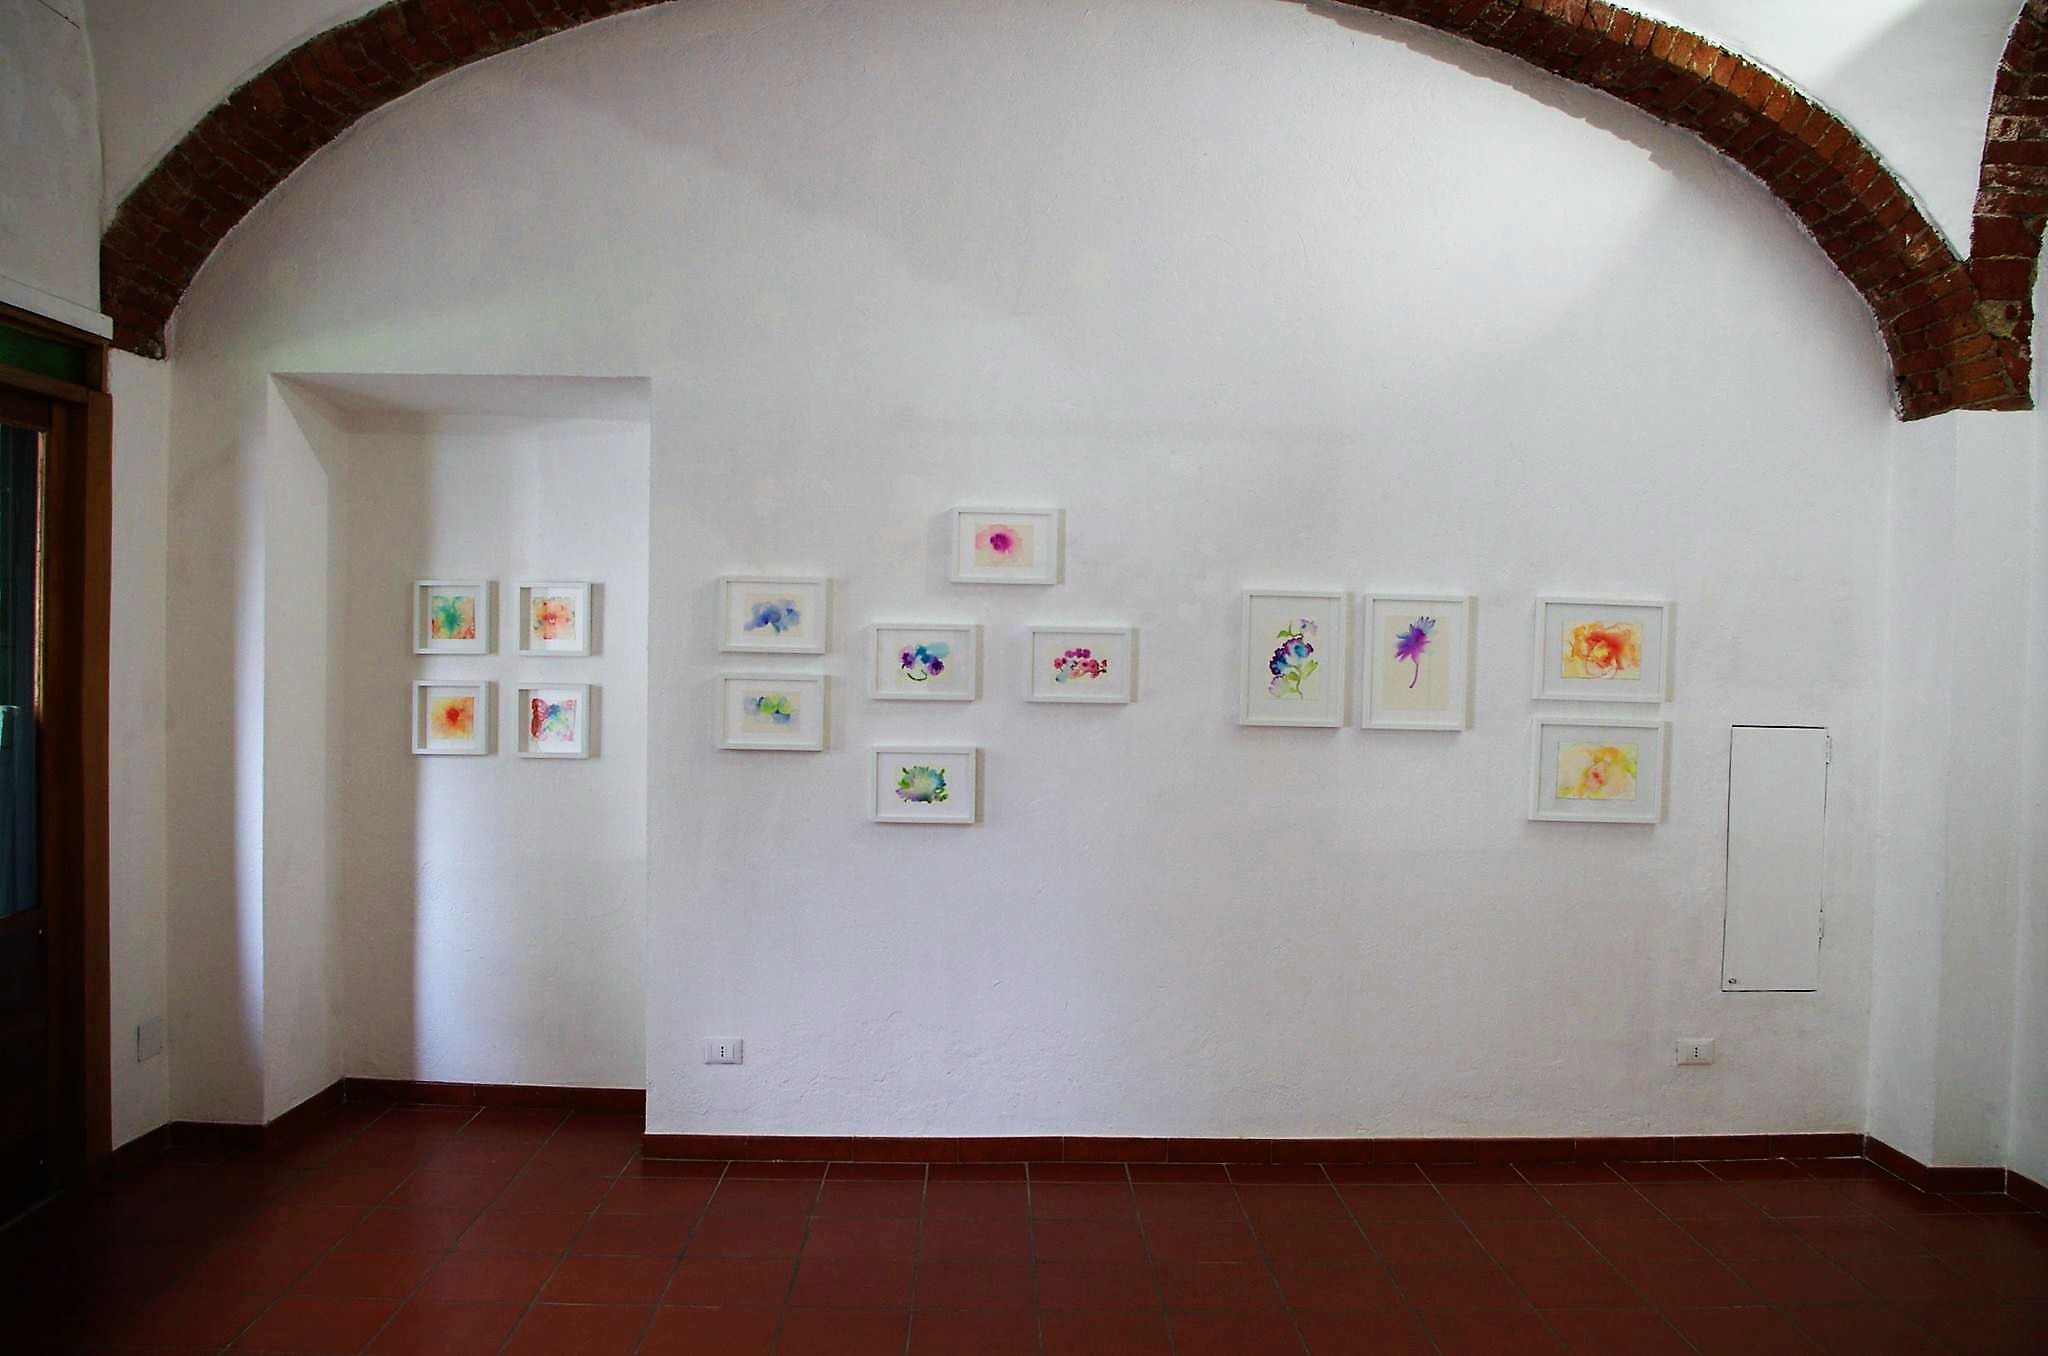 Ada Mascolo, Dissolvenze. Exhibition view at Galleria Febo e Dafne, Torino 2017